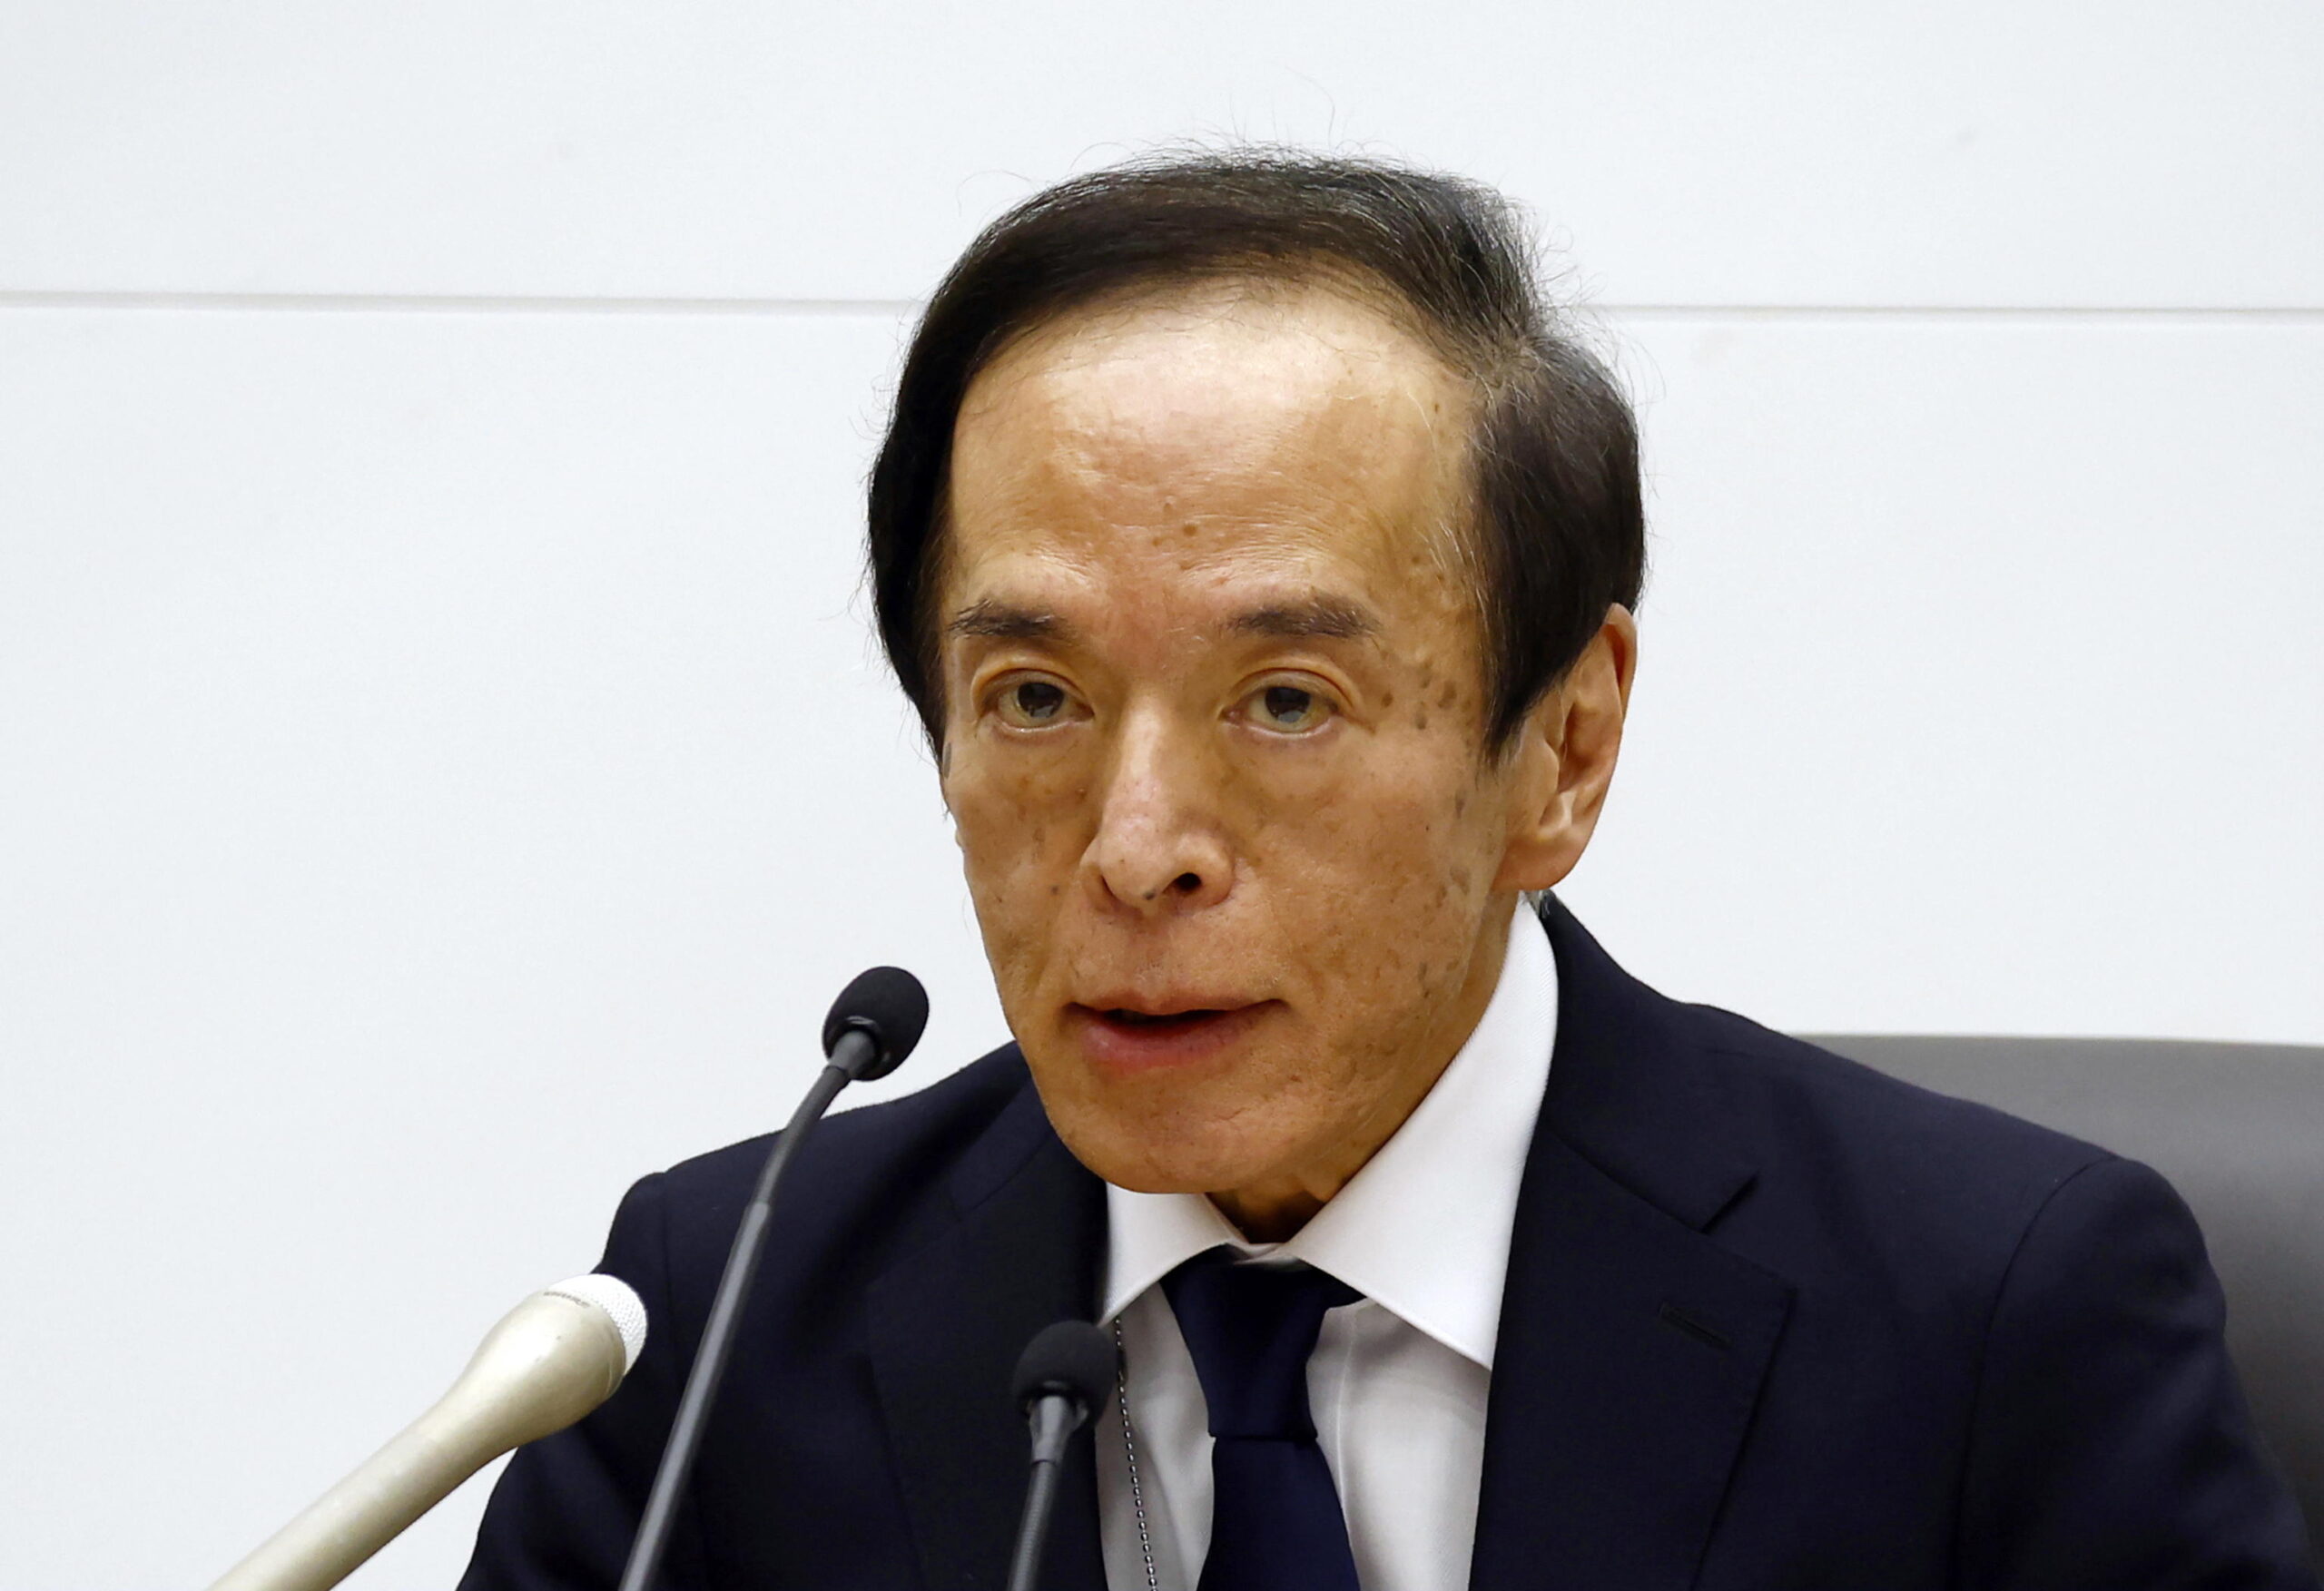 Boj, Ueda: “la politica rimane ultra-accomodante. Ancora tanta strada per riportare l’inflazione al 2%”